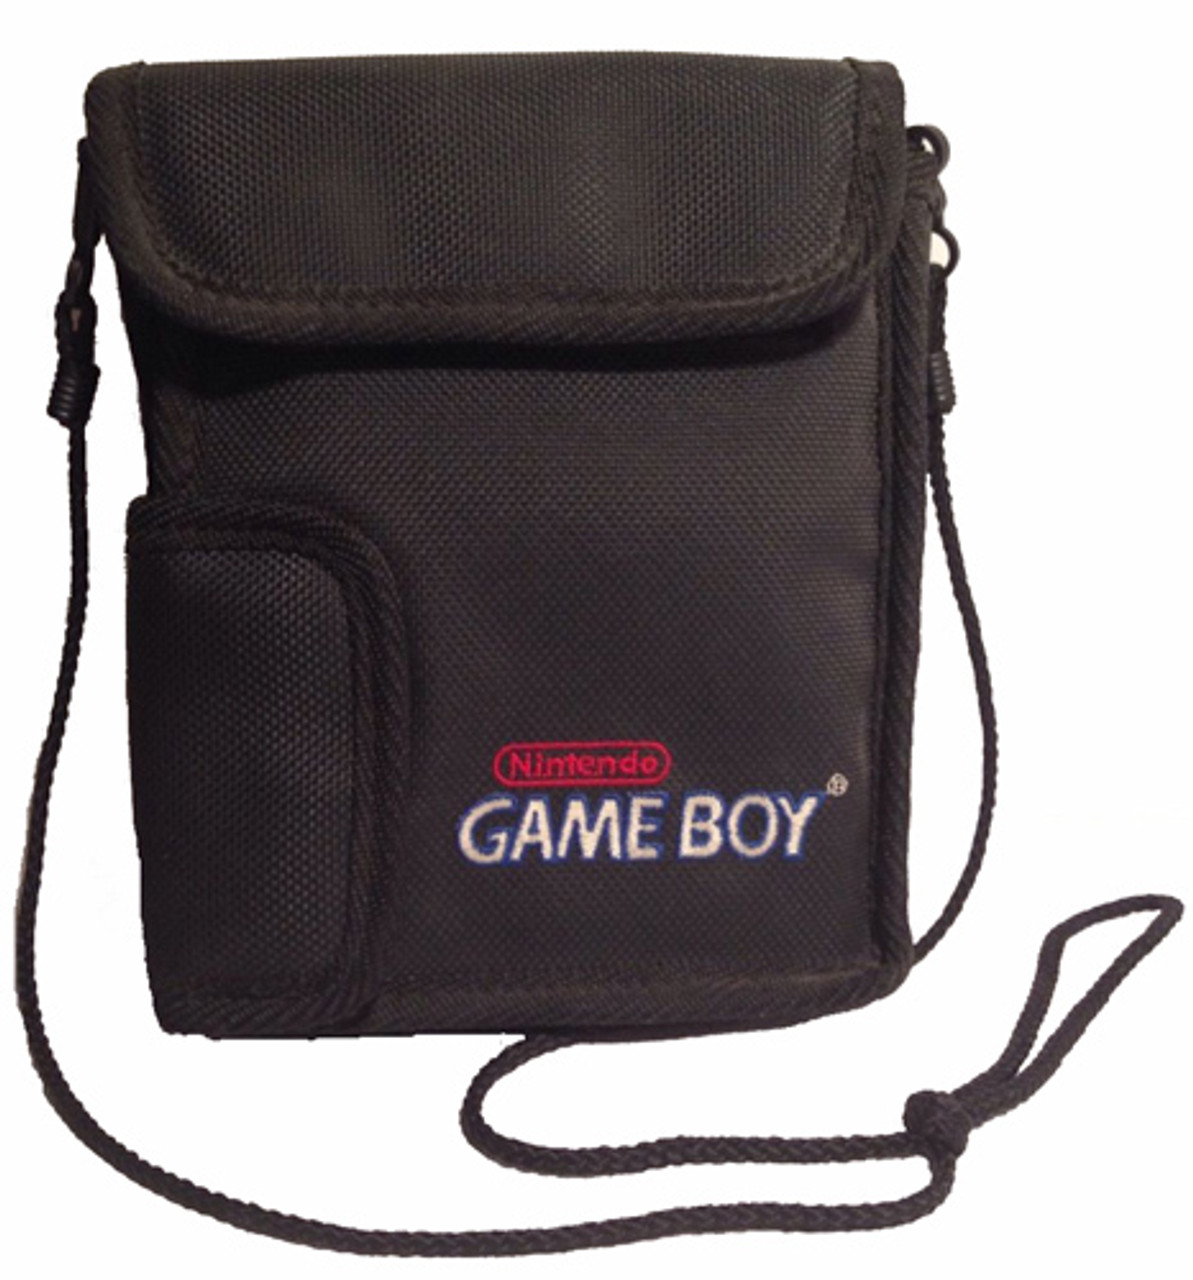 game boy travel case